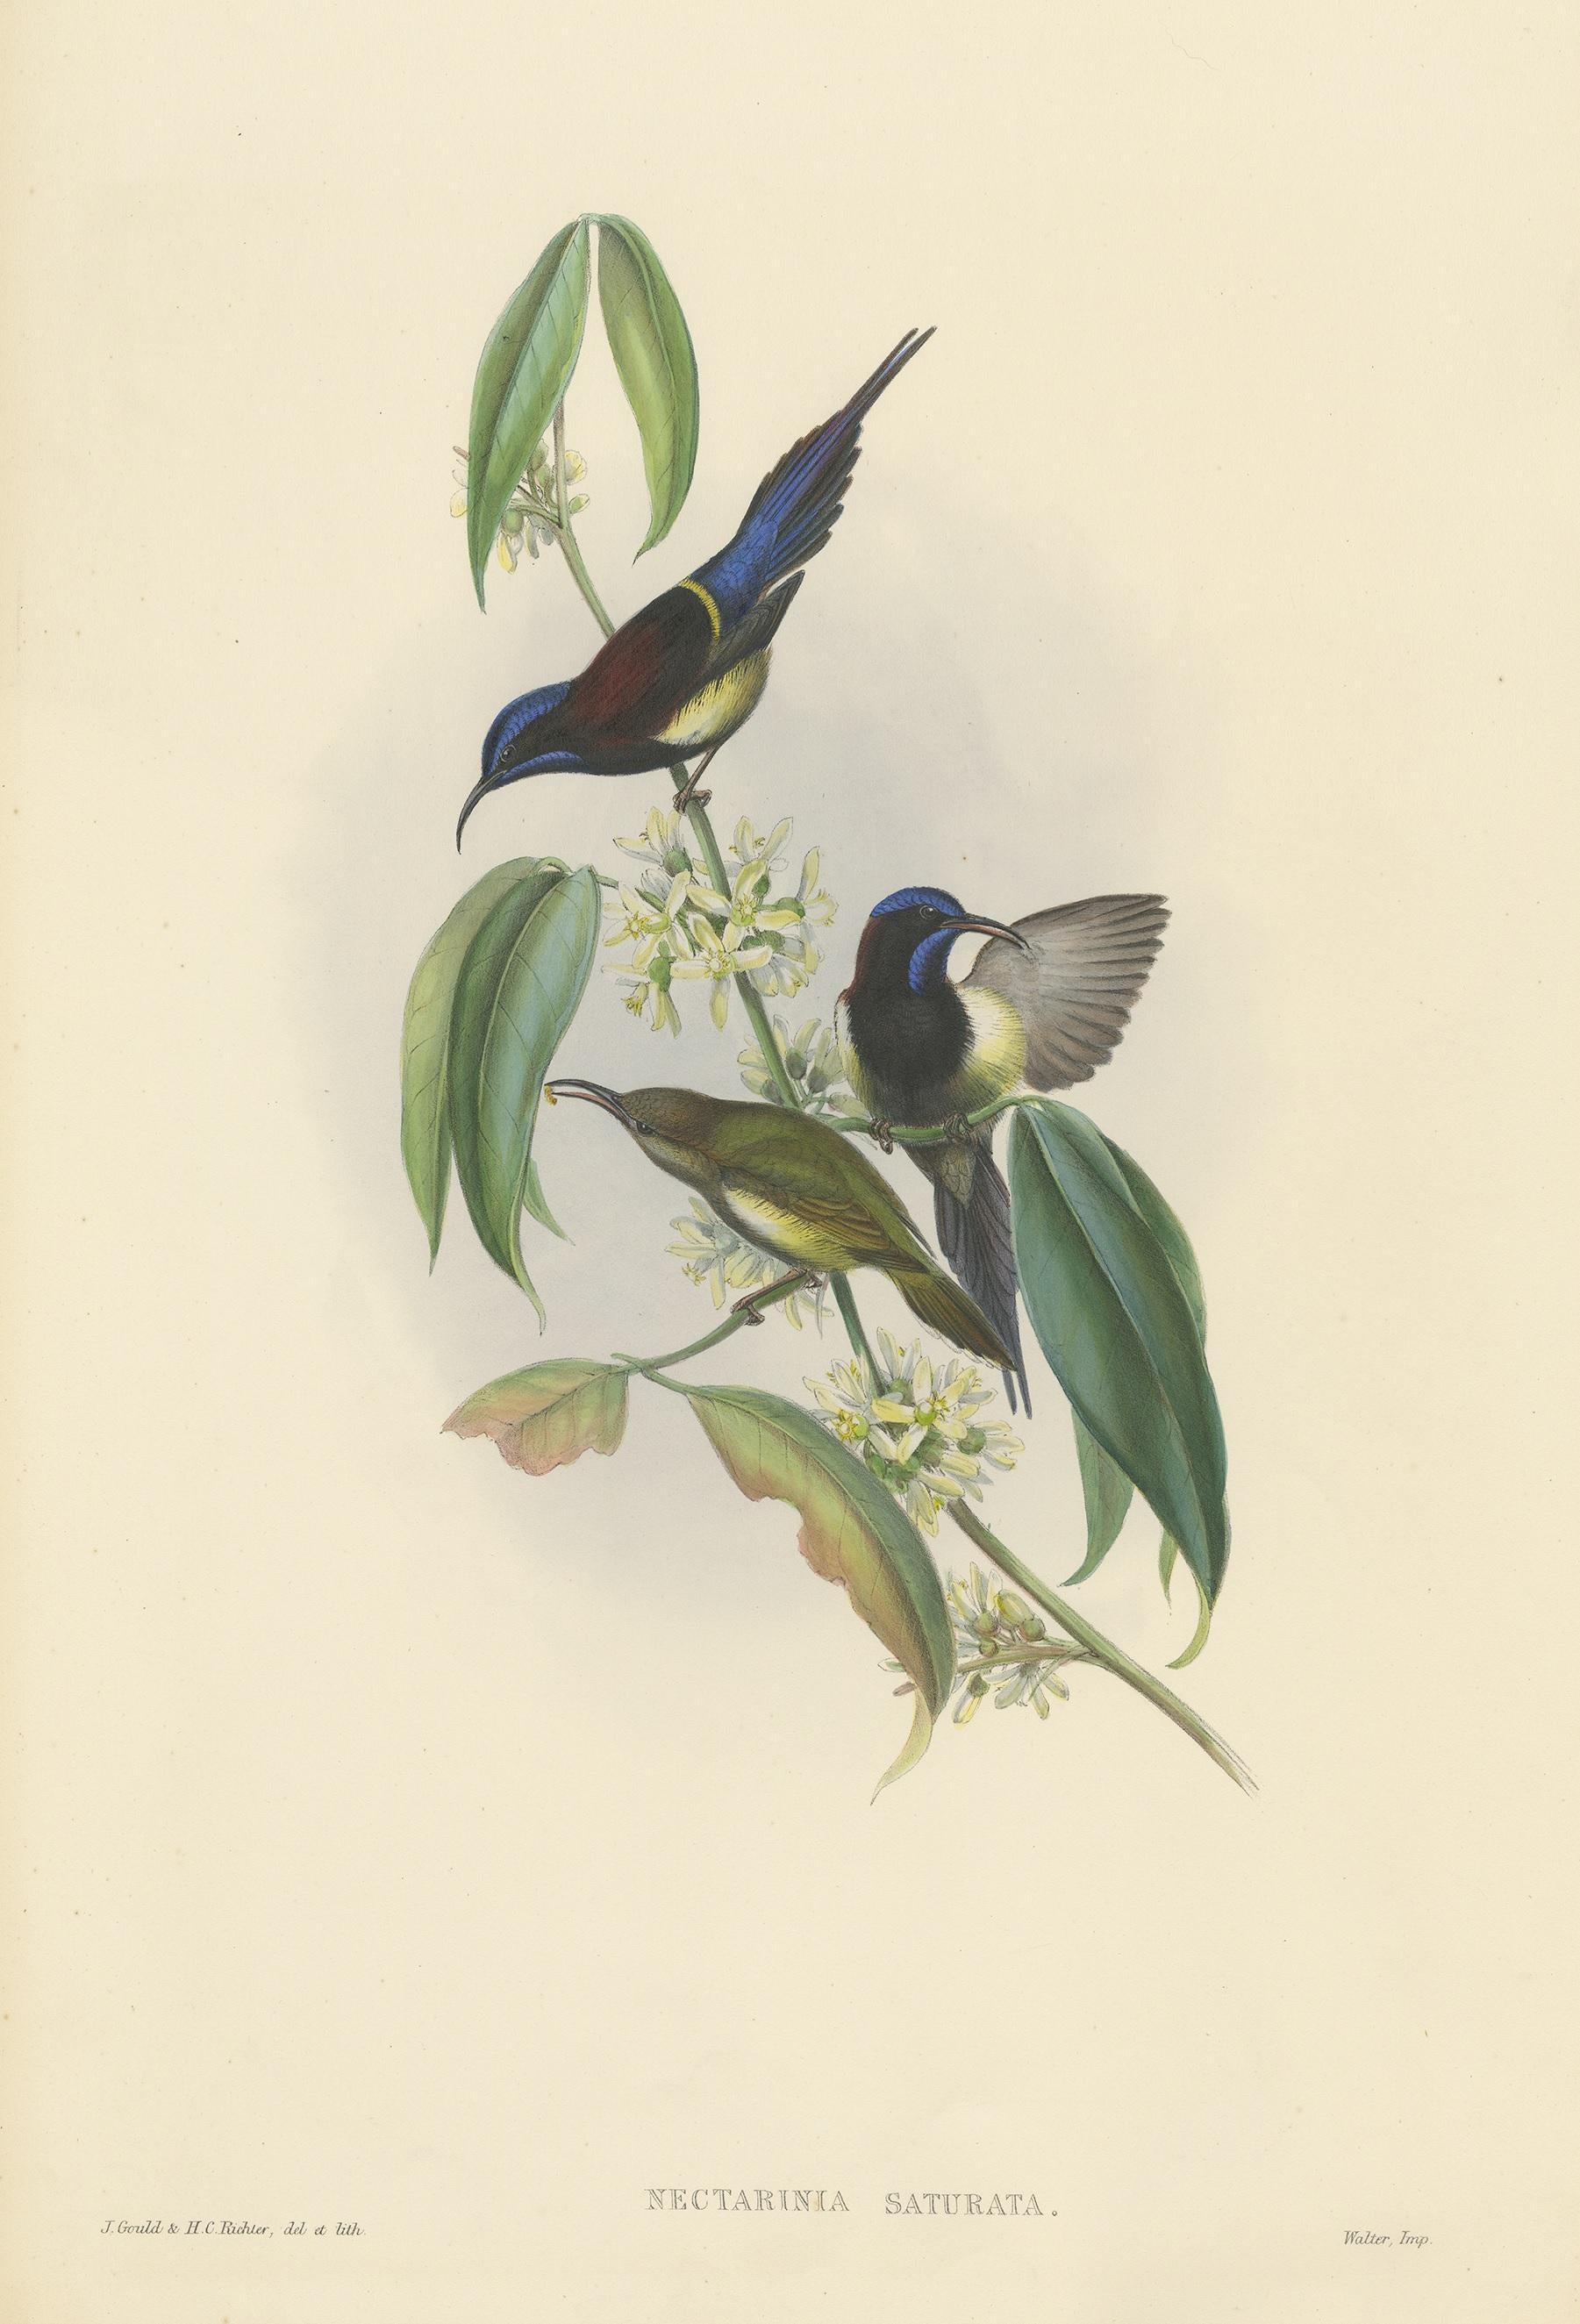 Antiker Vogeldruck mit dem Titel 'Nectarinia Saturata'. Original-Lithografie des Schwarzbrust-Sonnenvogels. Dieser Druck stammt aus 